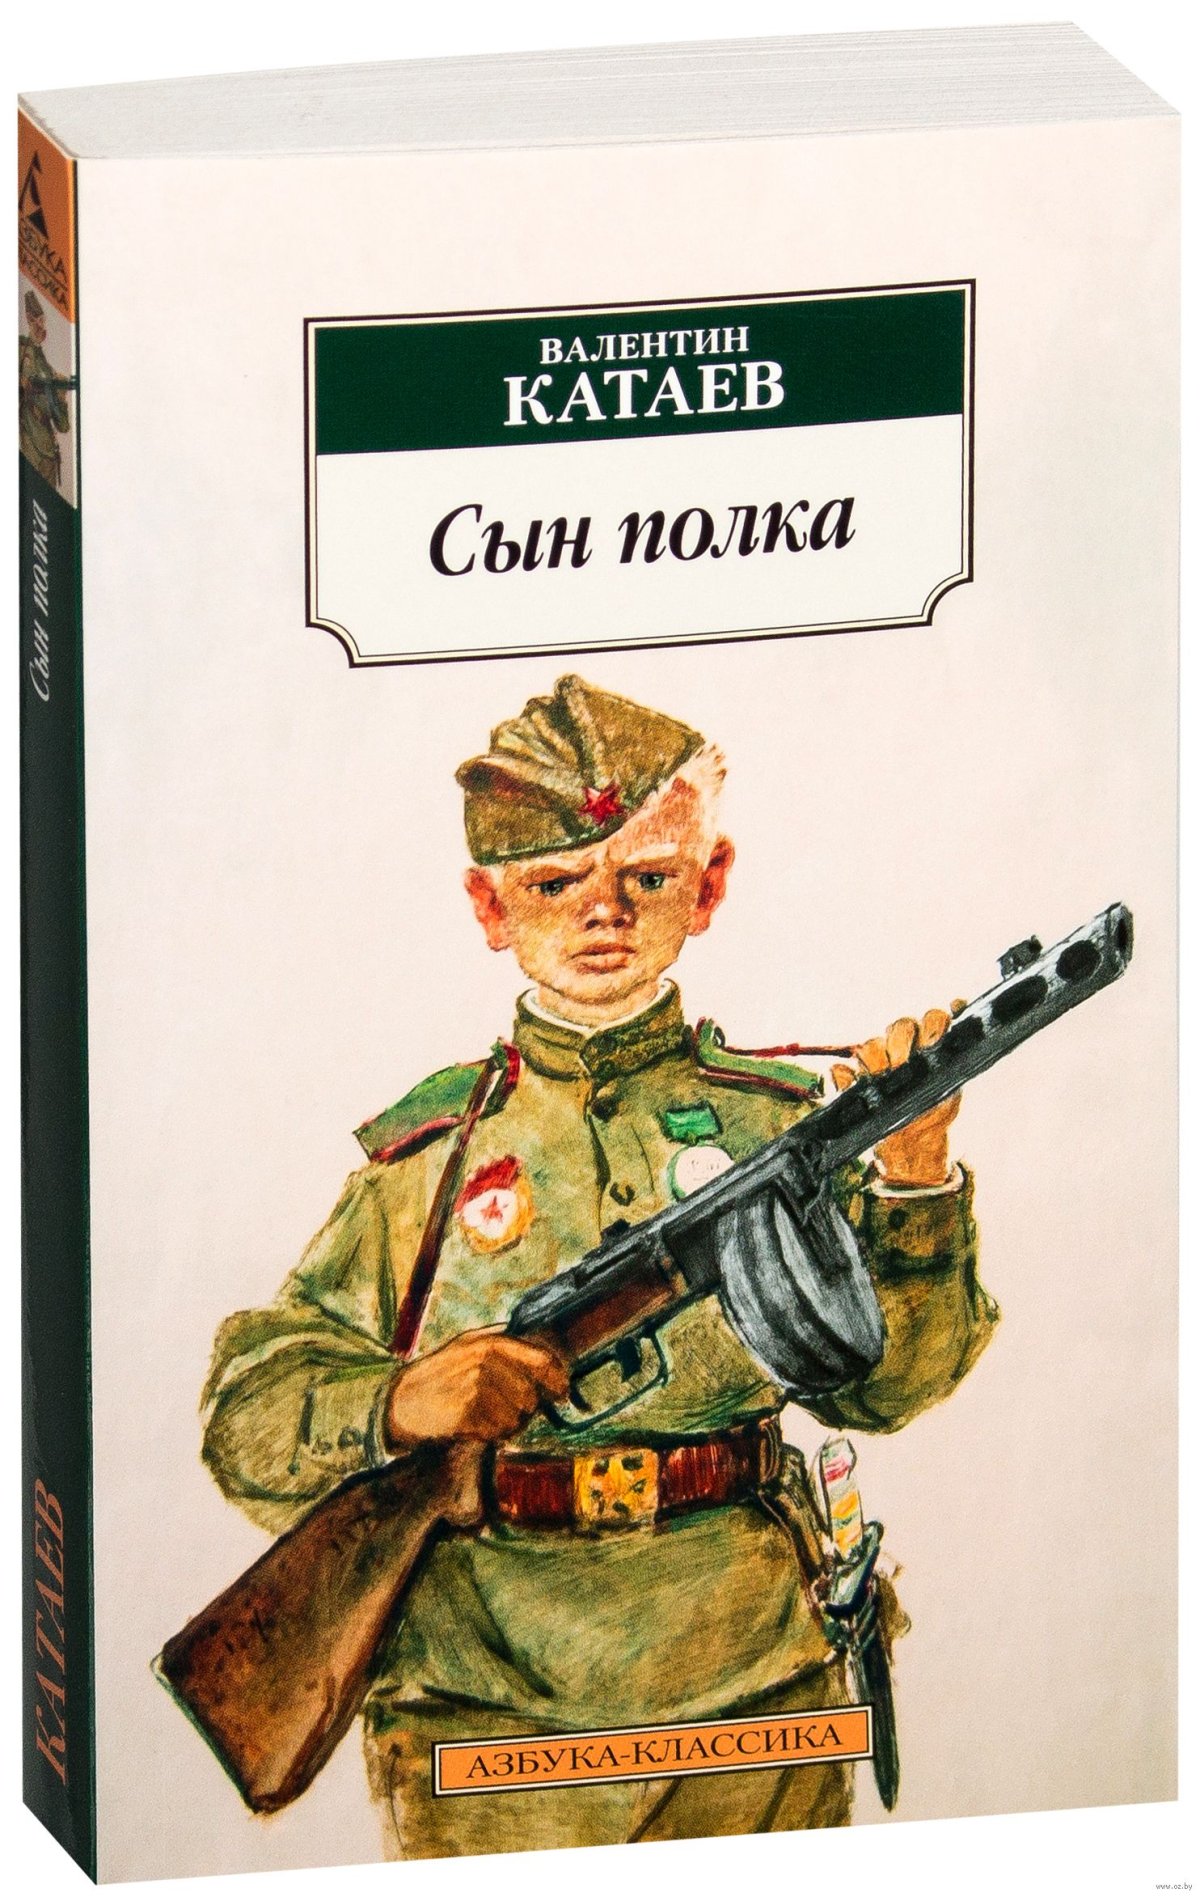 Книга сын полка полностью. Катаев писатель сын полка. Книжка Катаев сын полка.